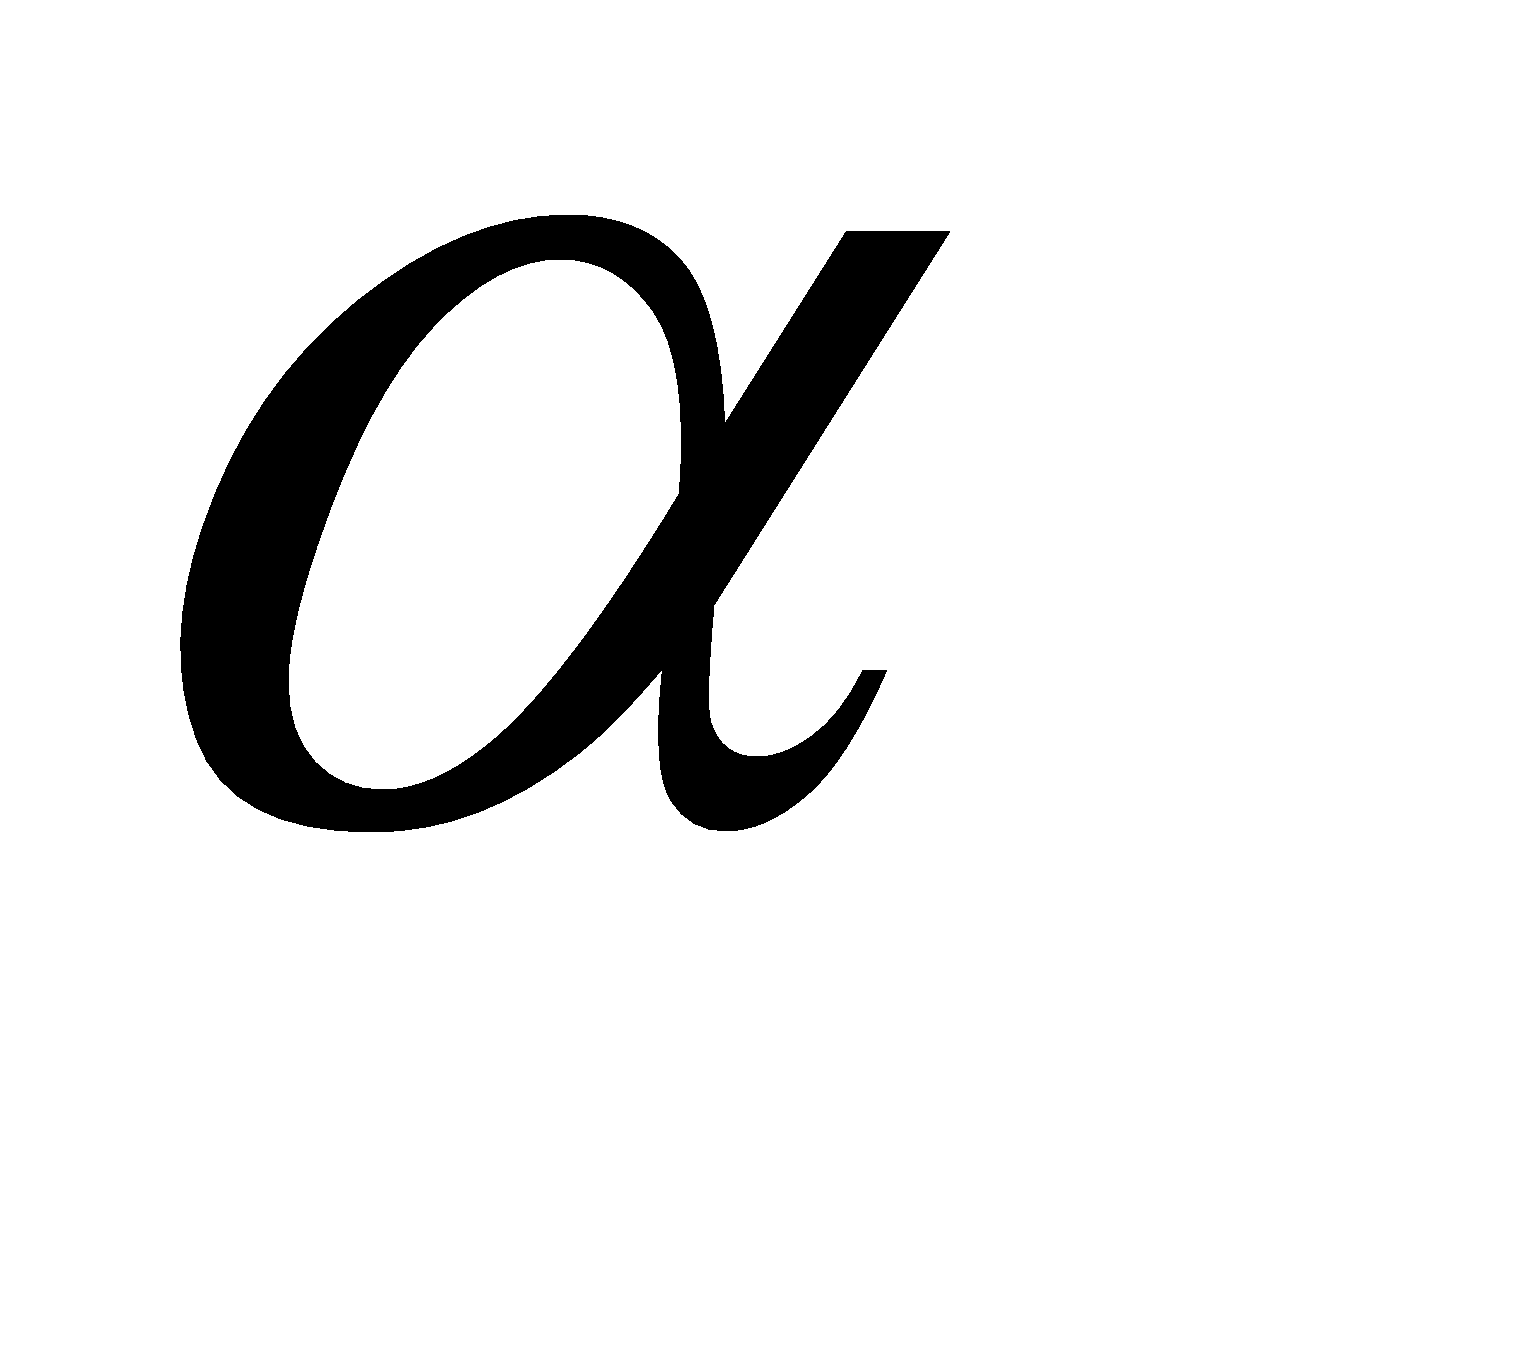 Alfa буква. Альфа буква греческого алфавита. Альфа Греческая буква прописная. Альфа буква греческого алфавита прописная. Греческая Альфа символ.